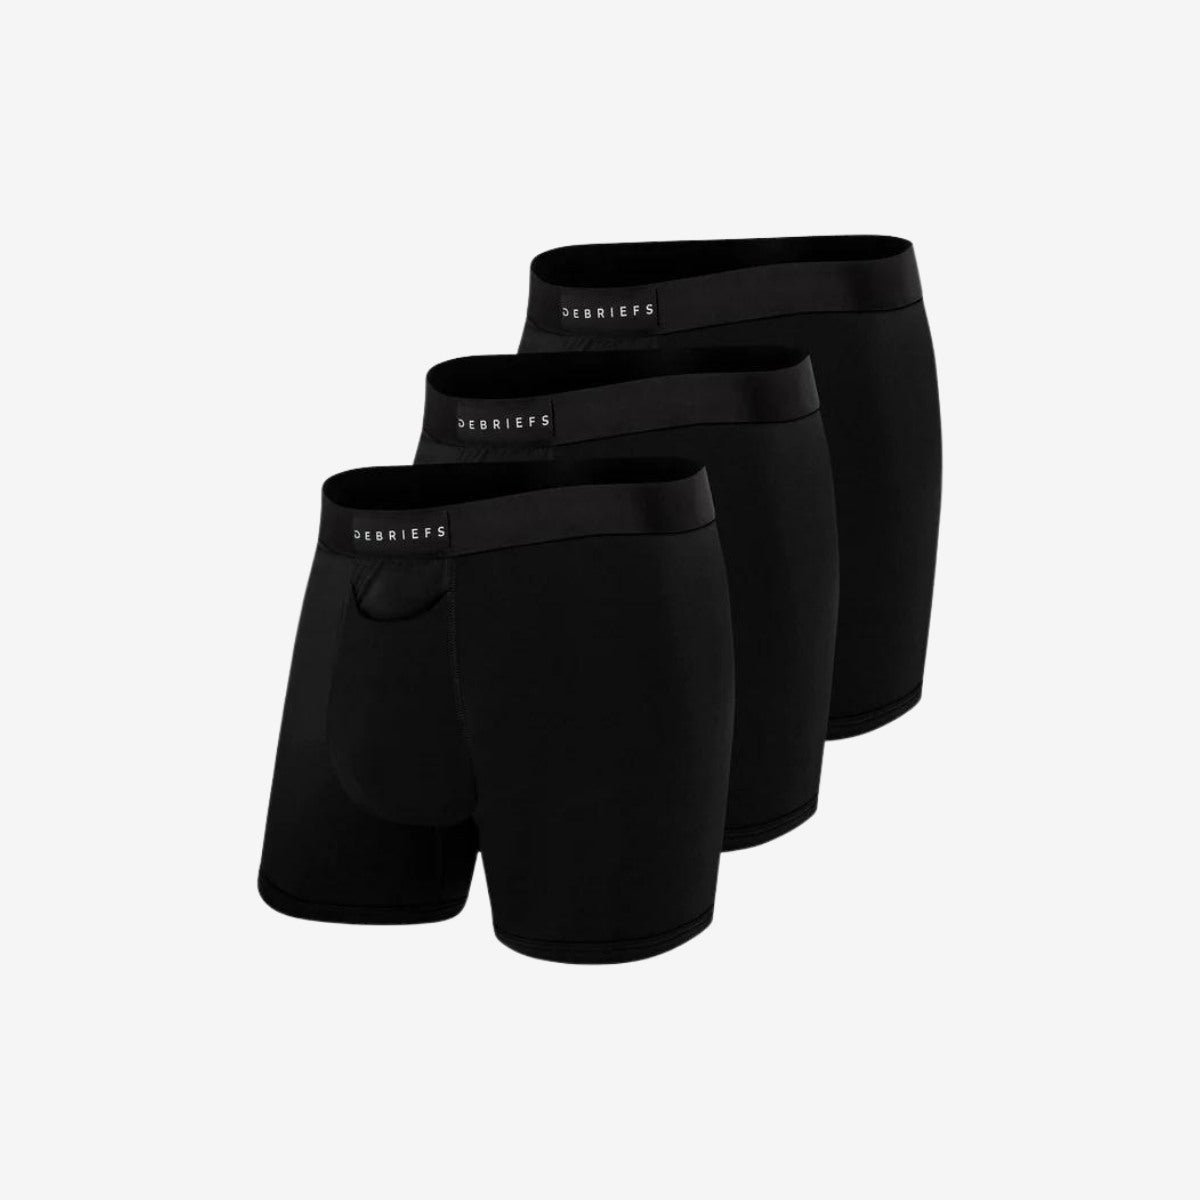 Mens Boxer Briefs Underwear Online 3 pack - Black